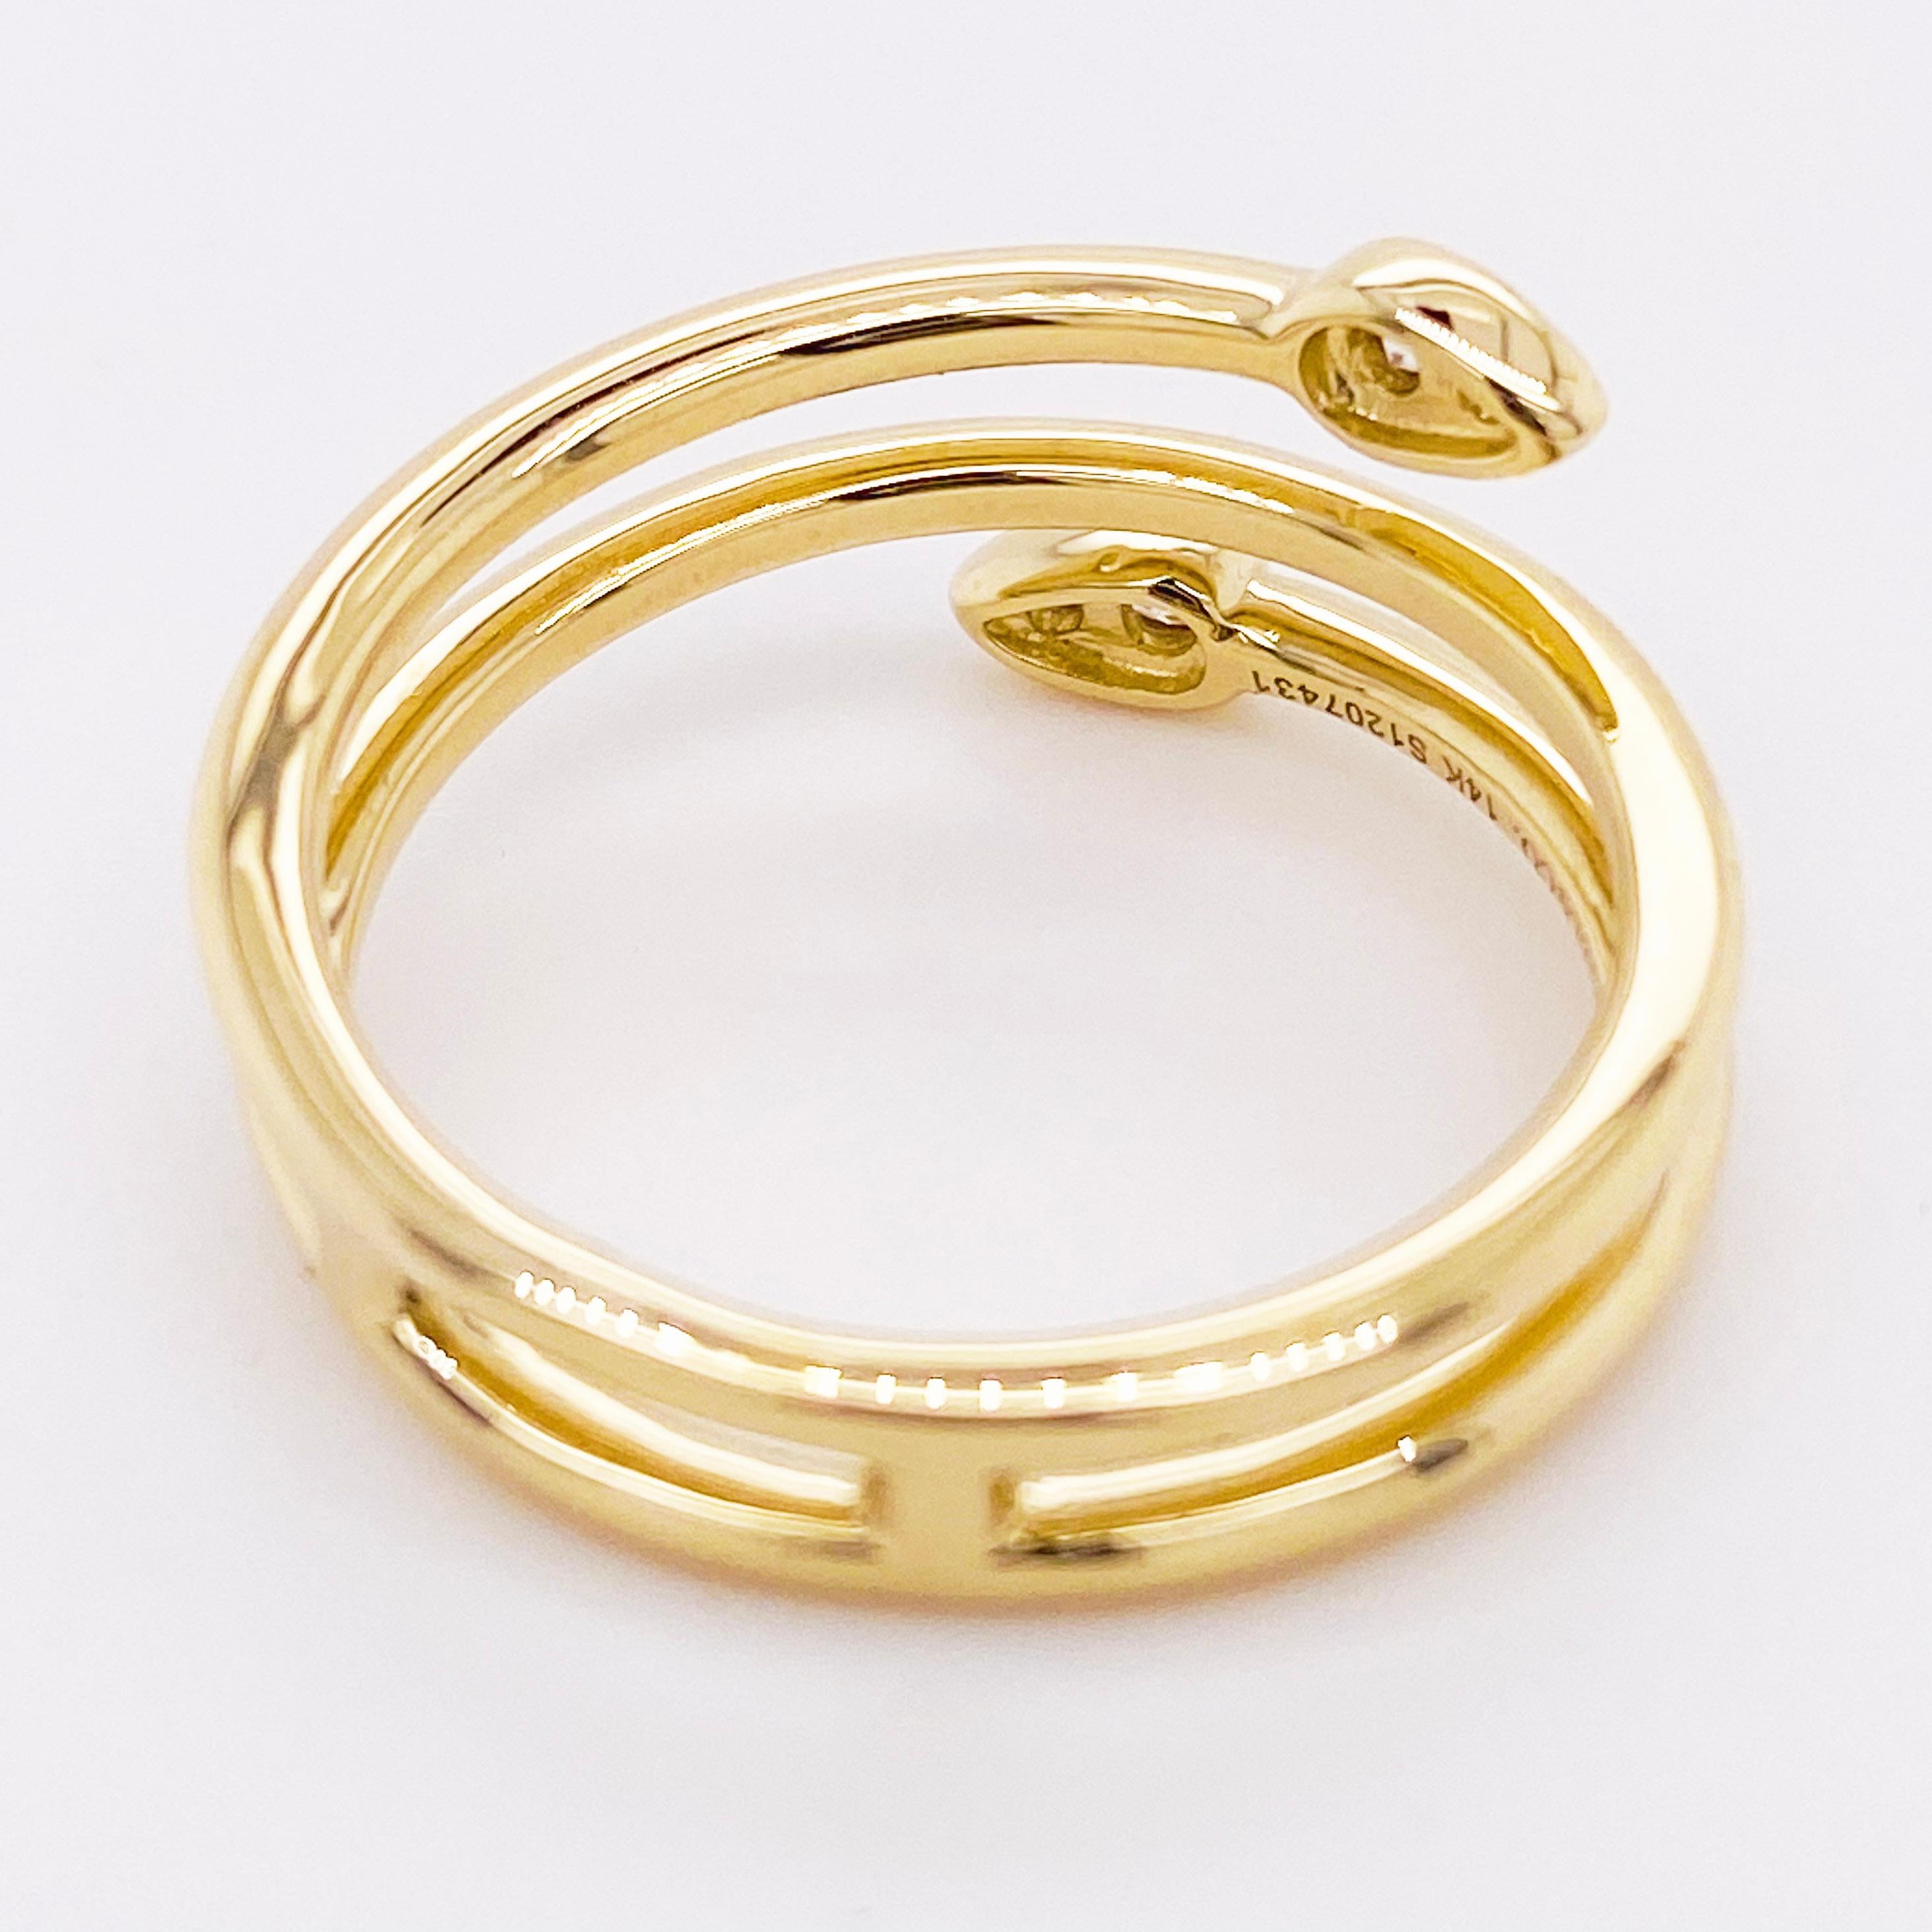 Round Cut Diamond Wrap Ring, 14 Karat Gold Wrap Ring Cluster Teardrop Tips, LR51801Y45JJ